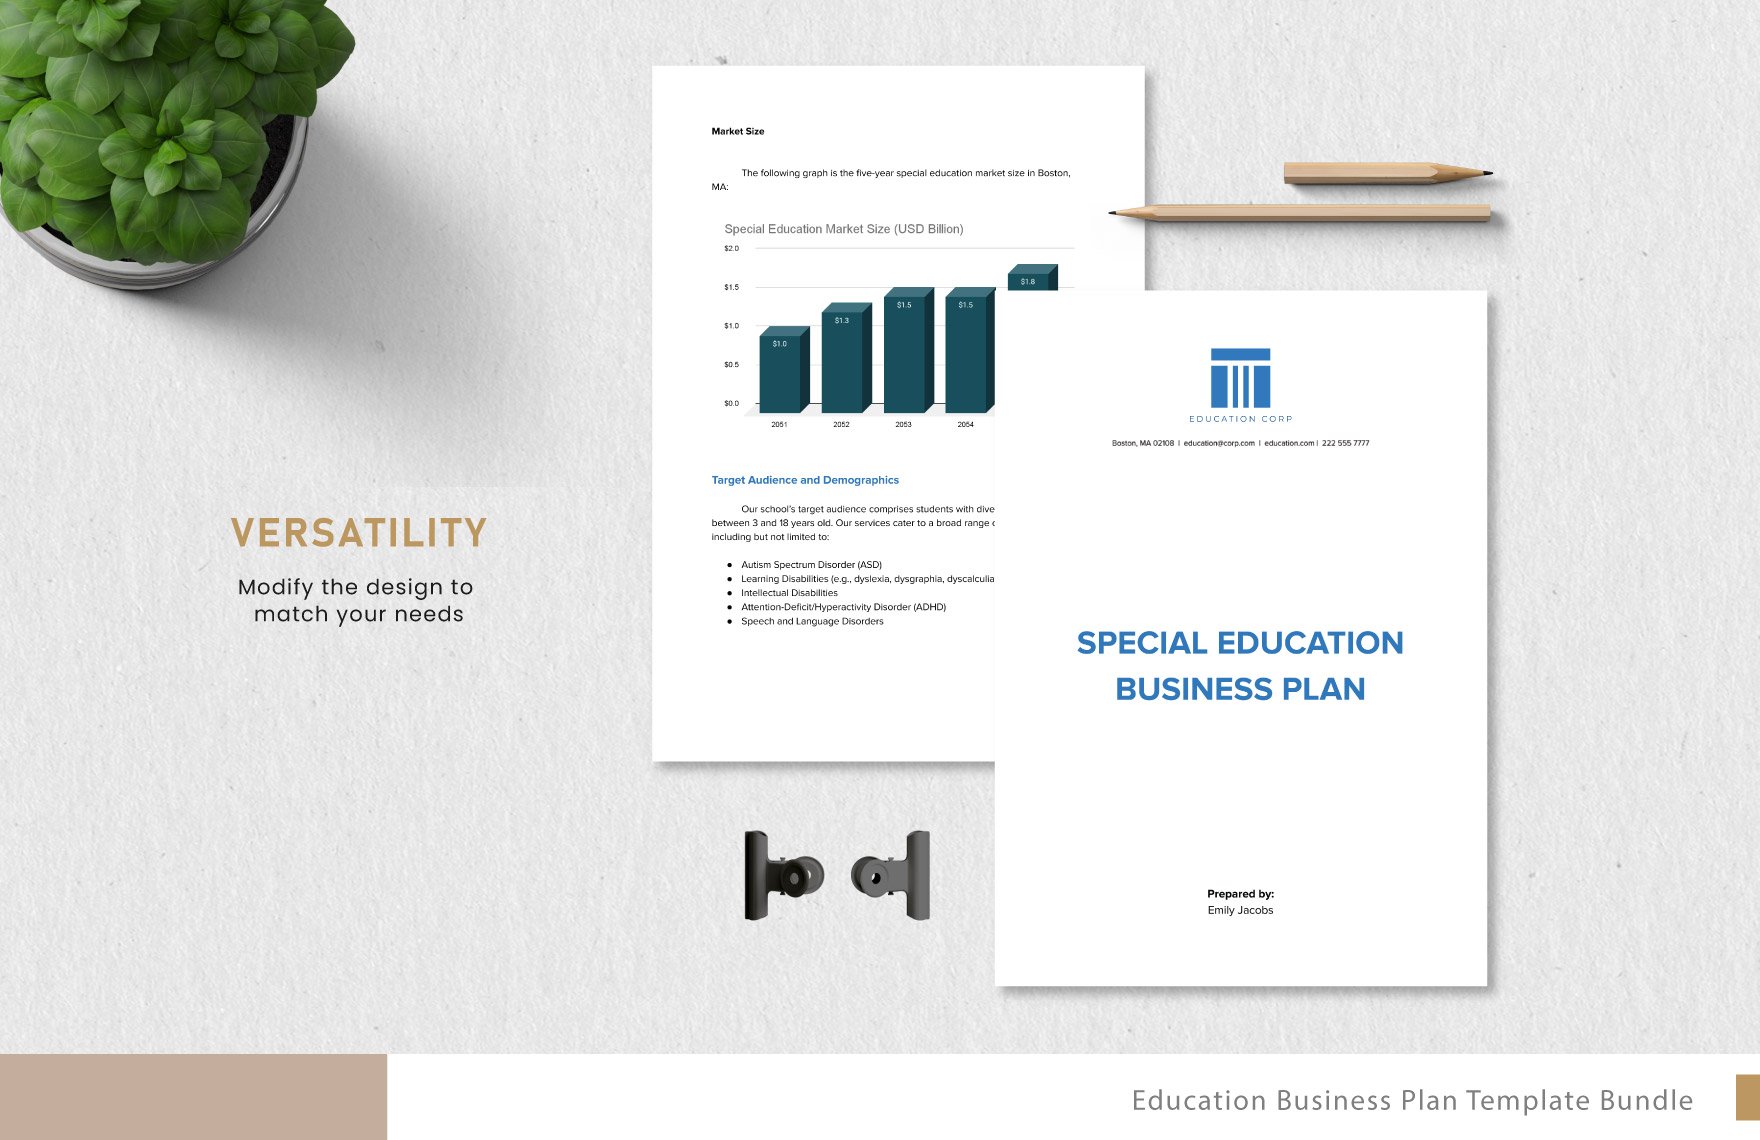 5+ Education Business Plan Template Bundle